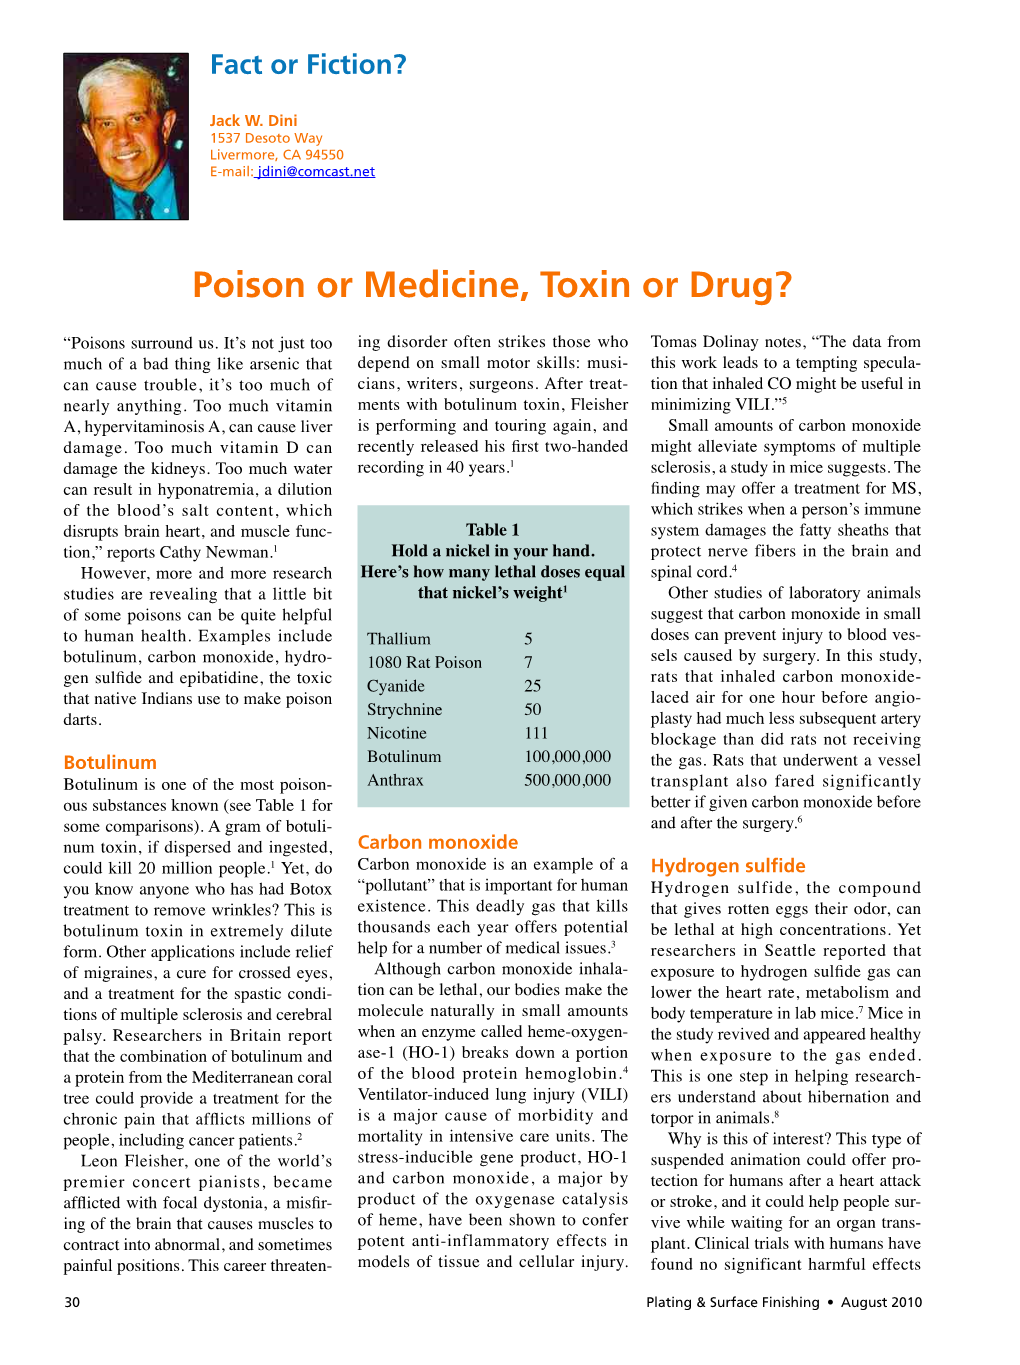 Poison Or Medicine, Toxin Or Drug?